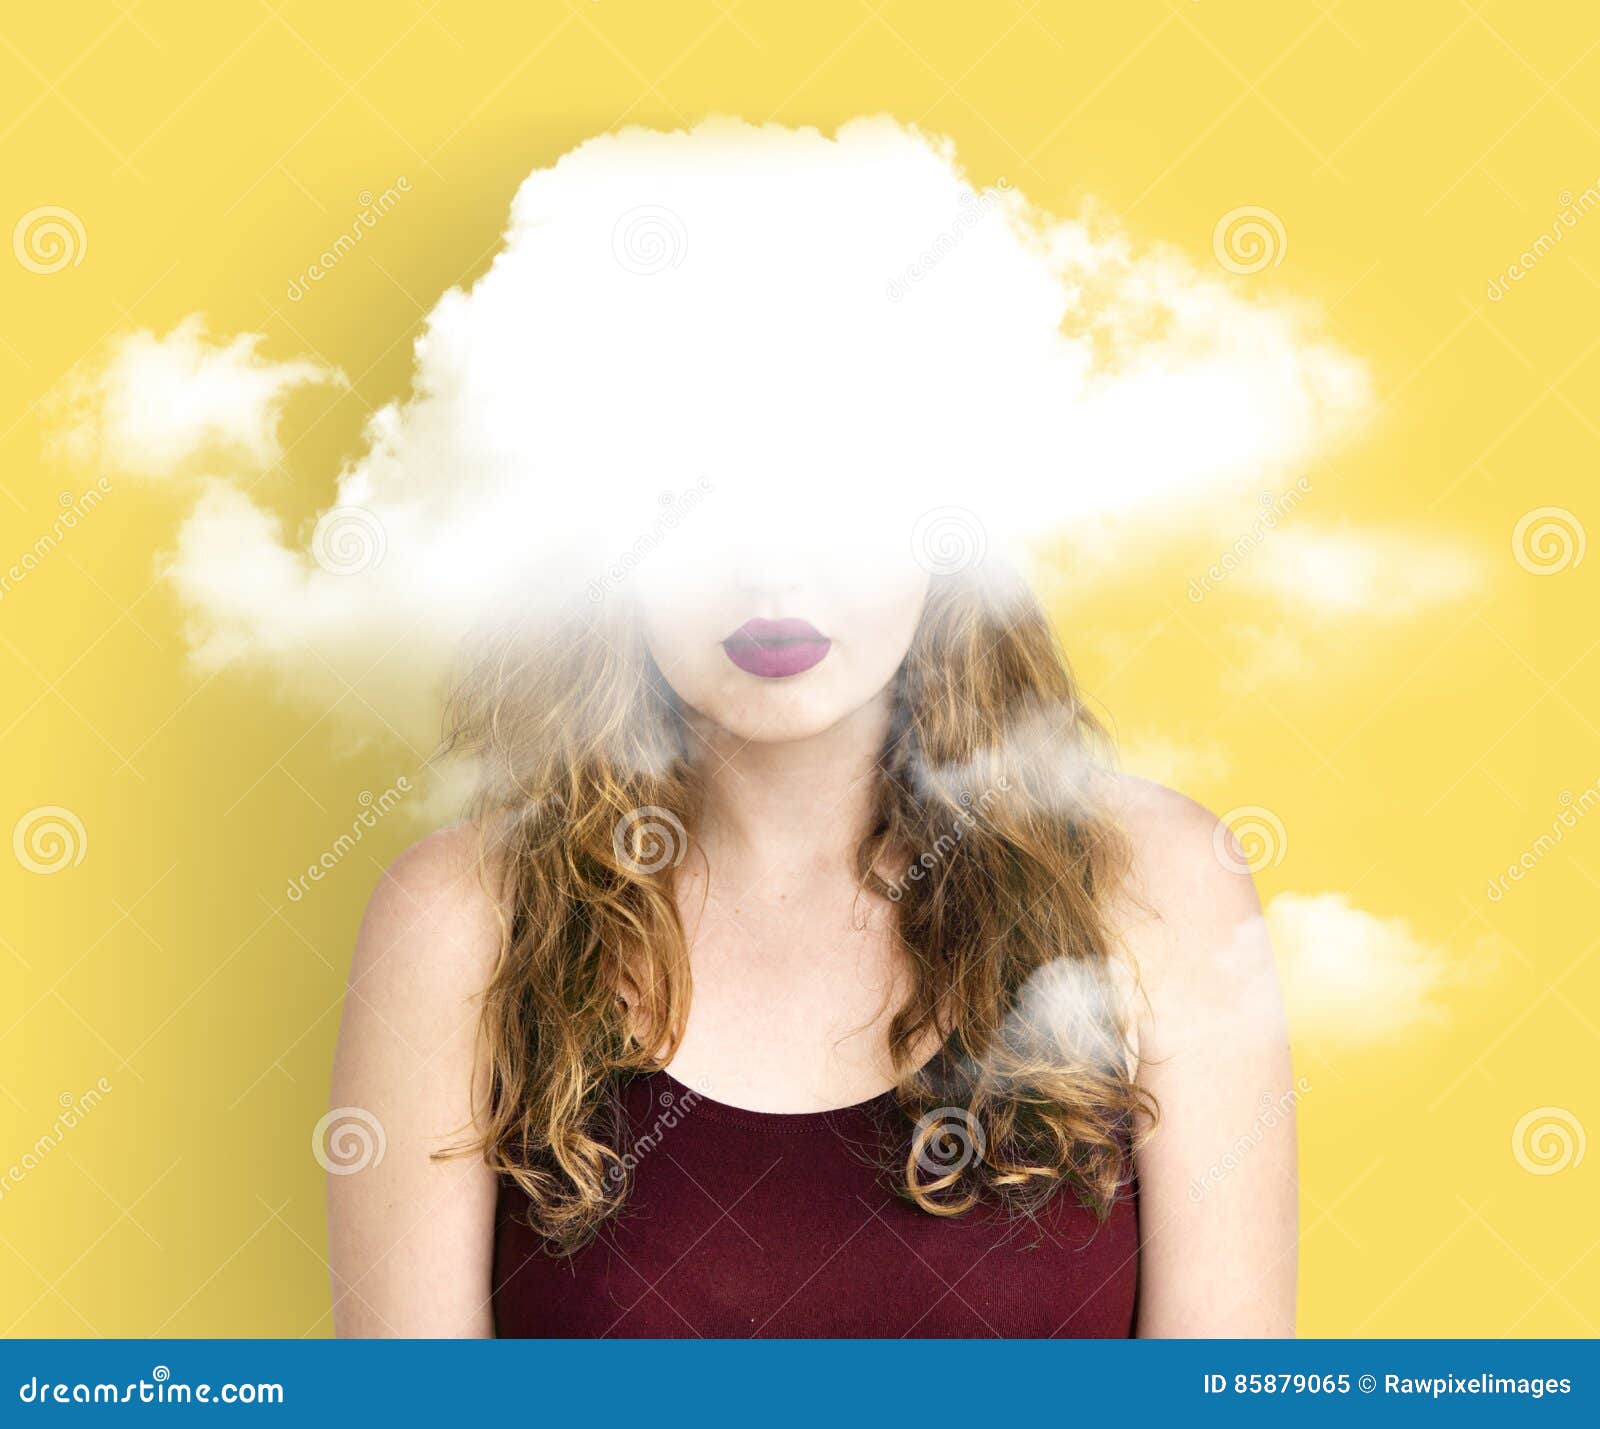 cloud hidden dilemma depression bliss